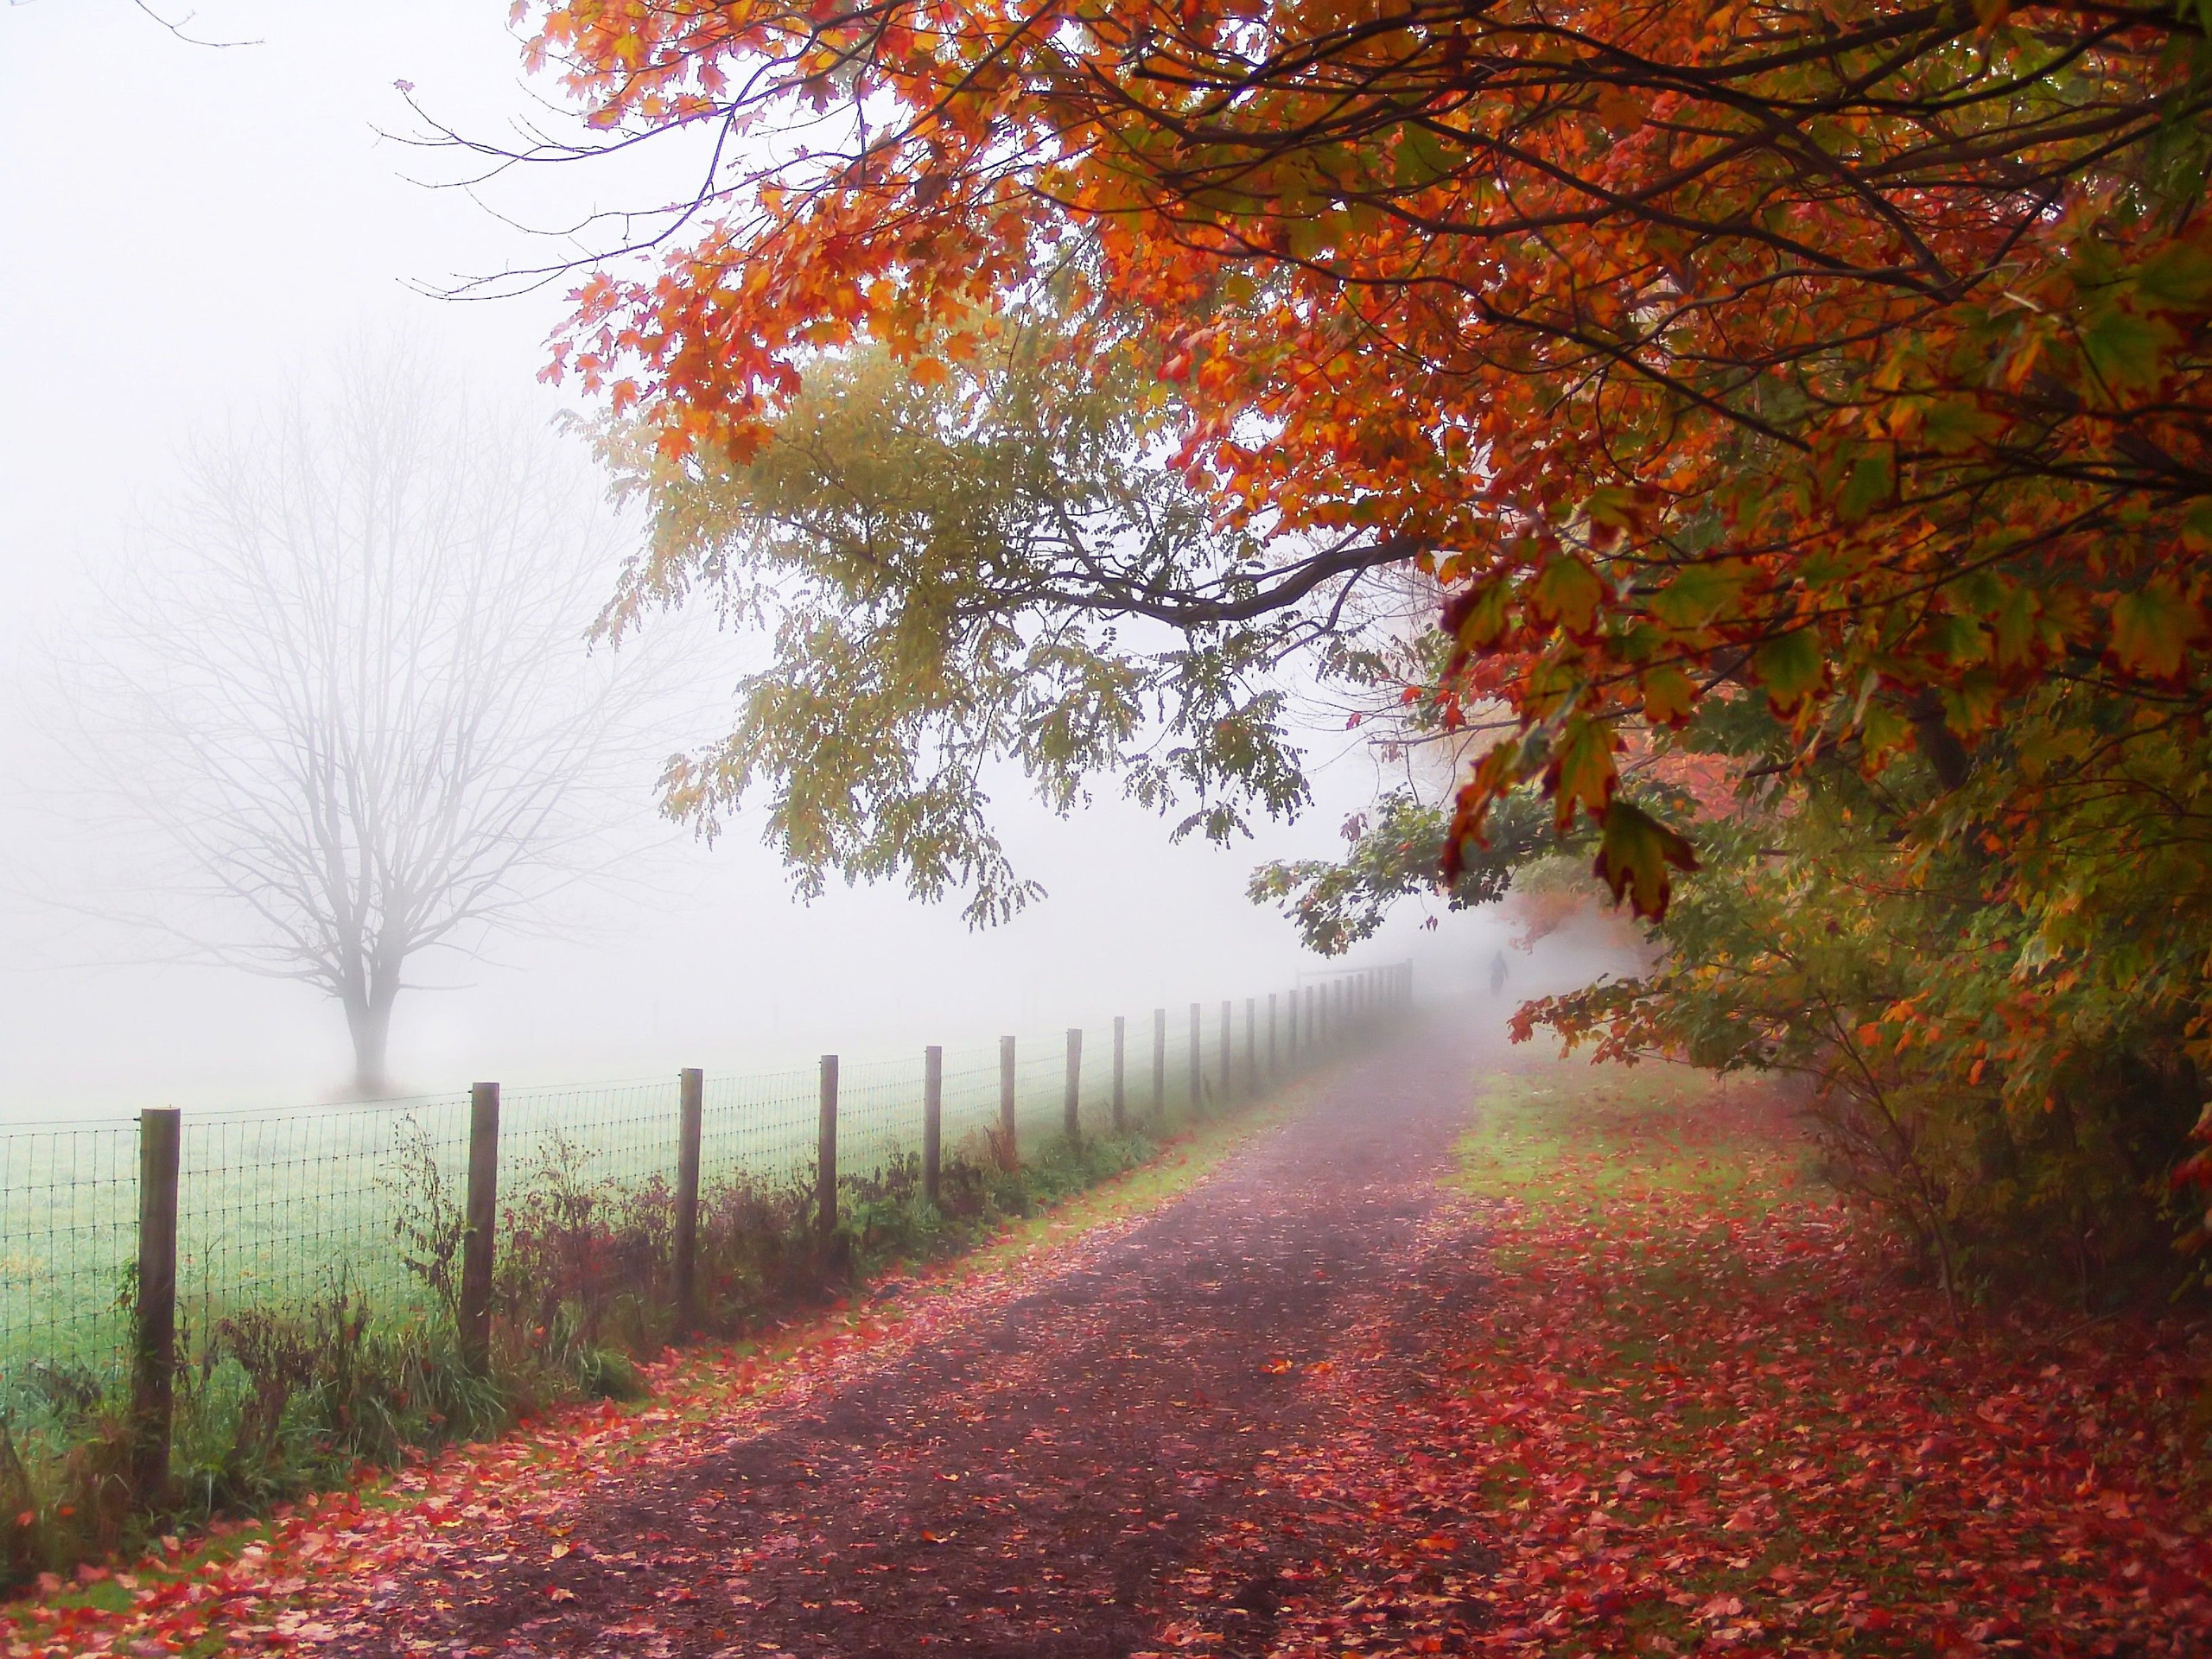 roads, landscape, trees, autumn Image for desktop